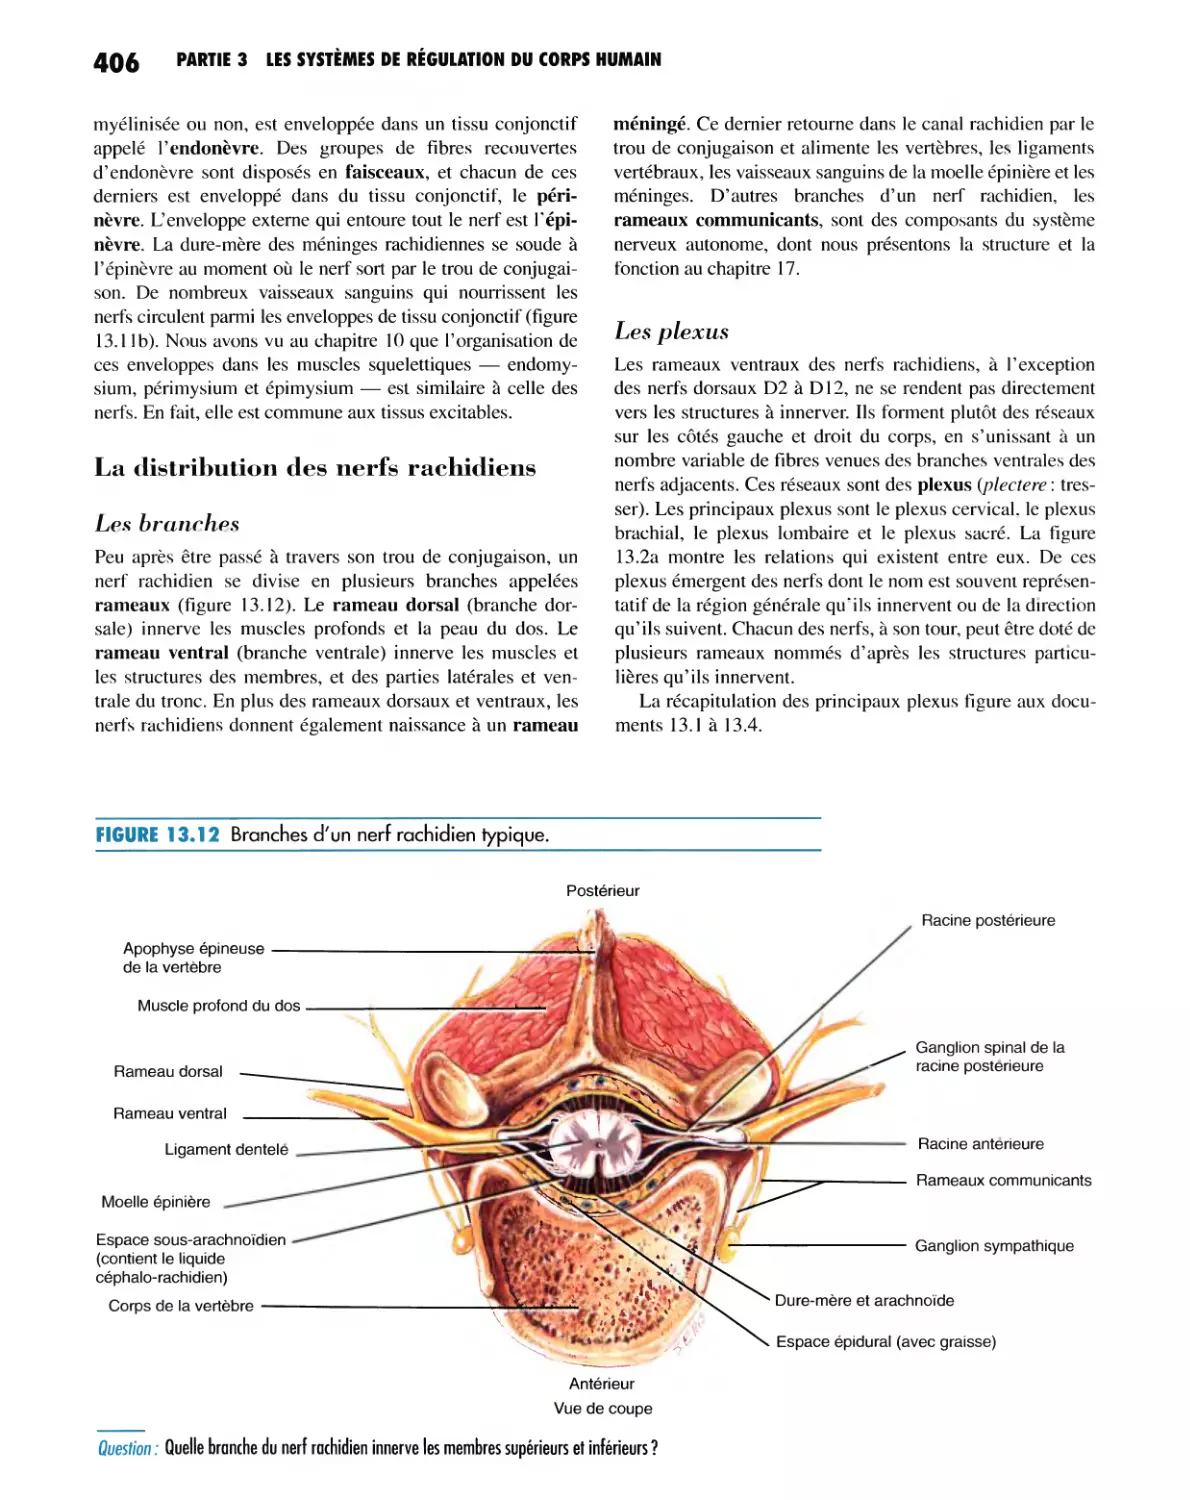 La distribution des nerfs rachidiens
Les plexus